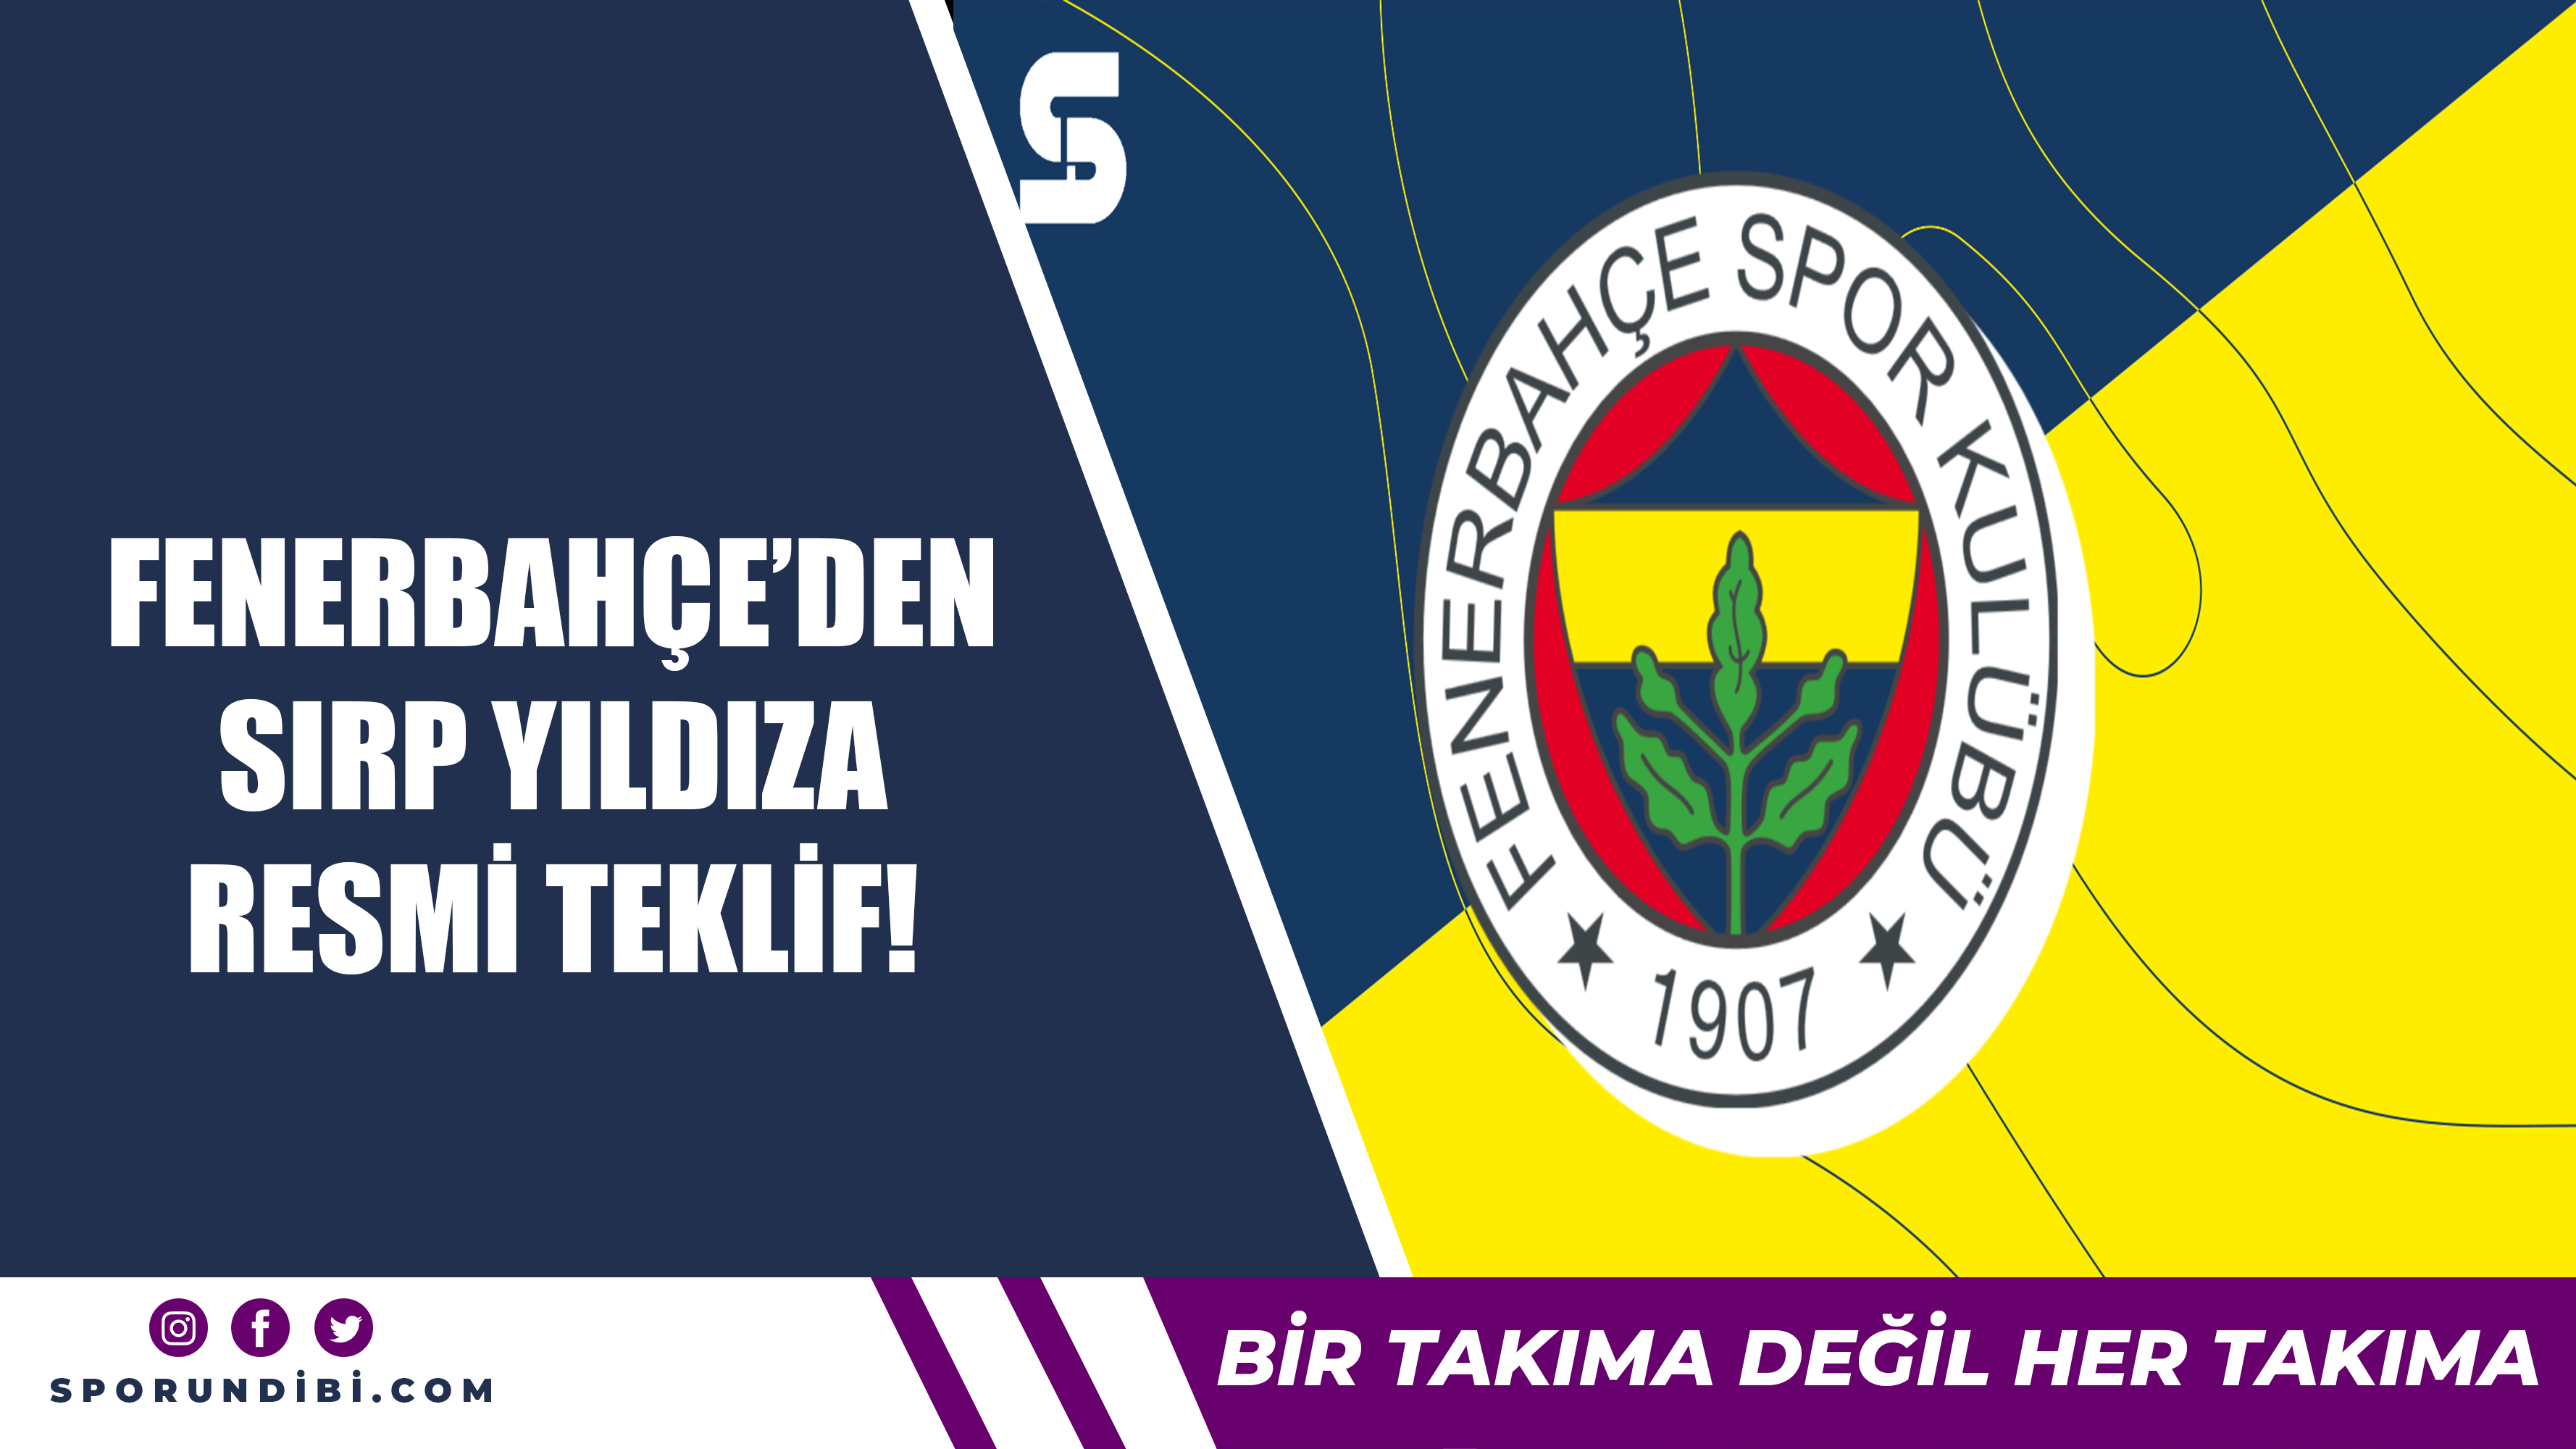 Fenerbahçe'den Sırp yıldıza resmi teklif!